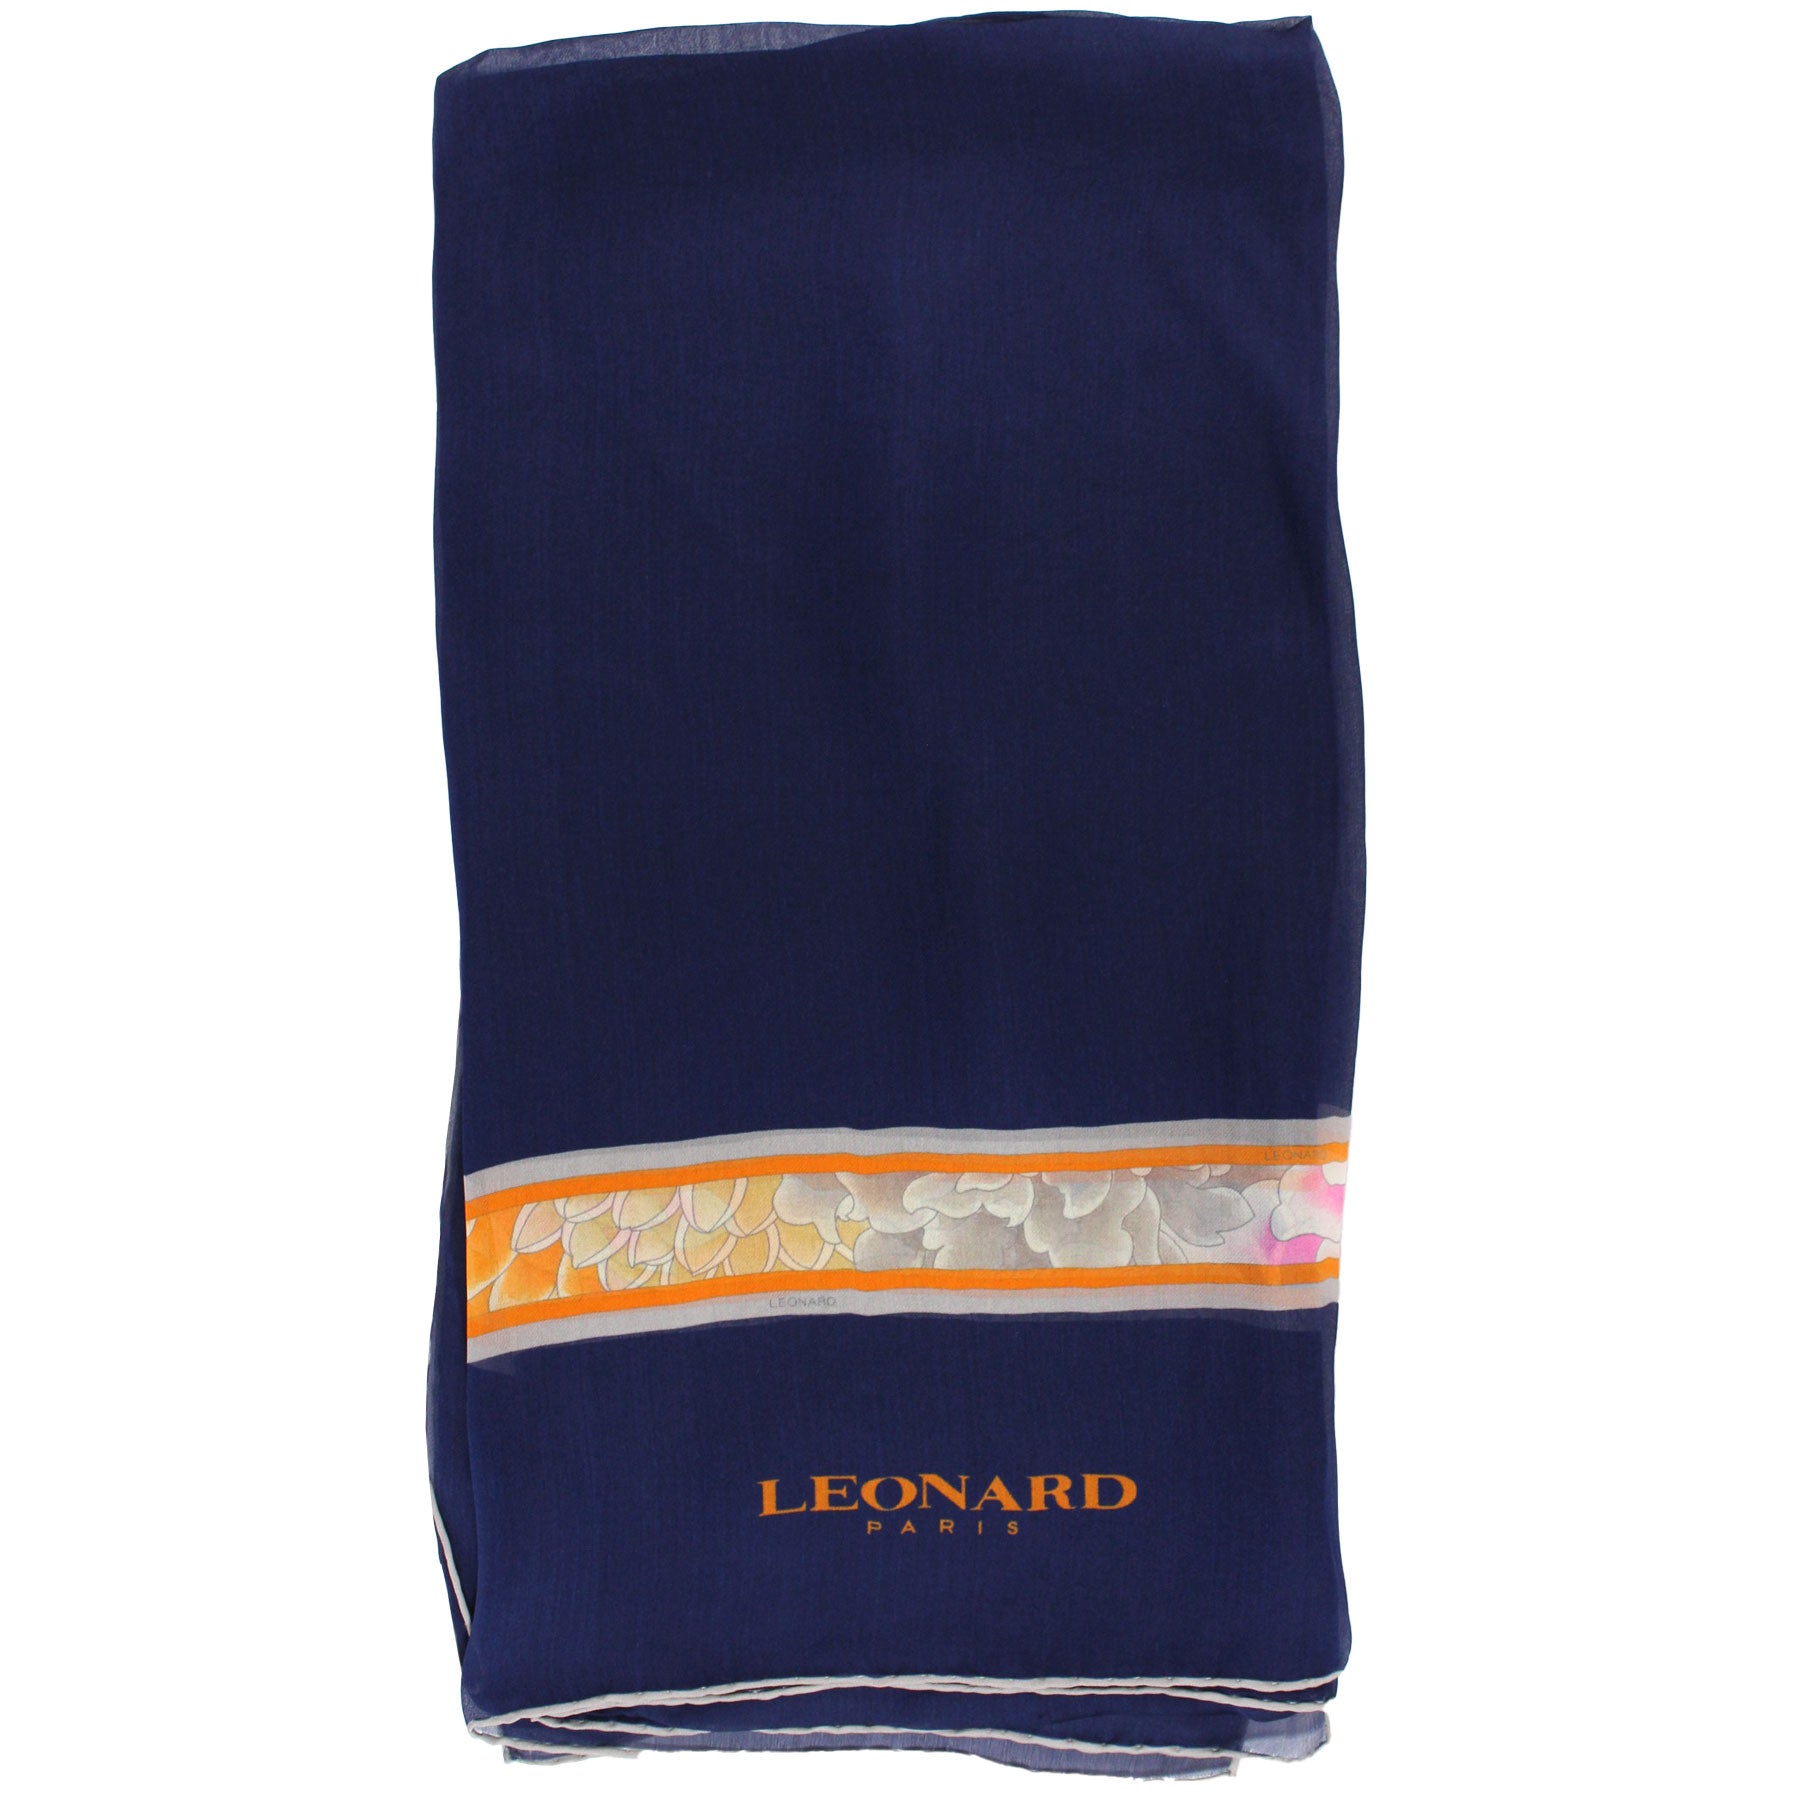 Leonard Paris Scarf Dark Blue Orange Gray Floral - Chiffon Silk Shawl